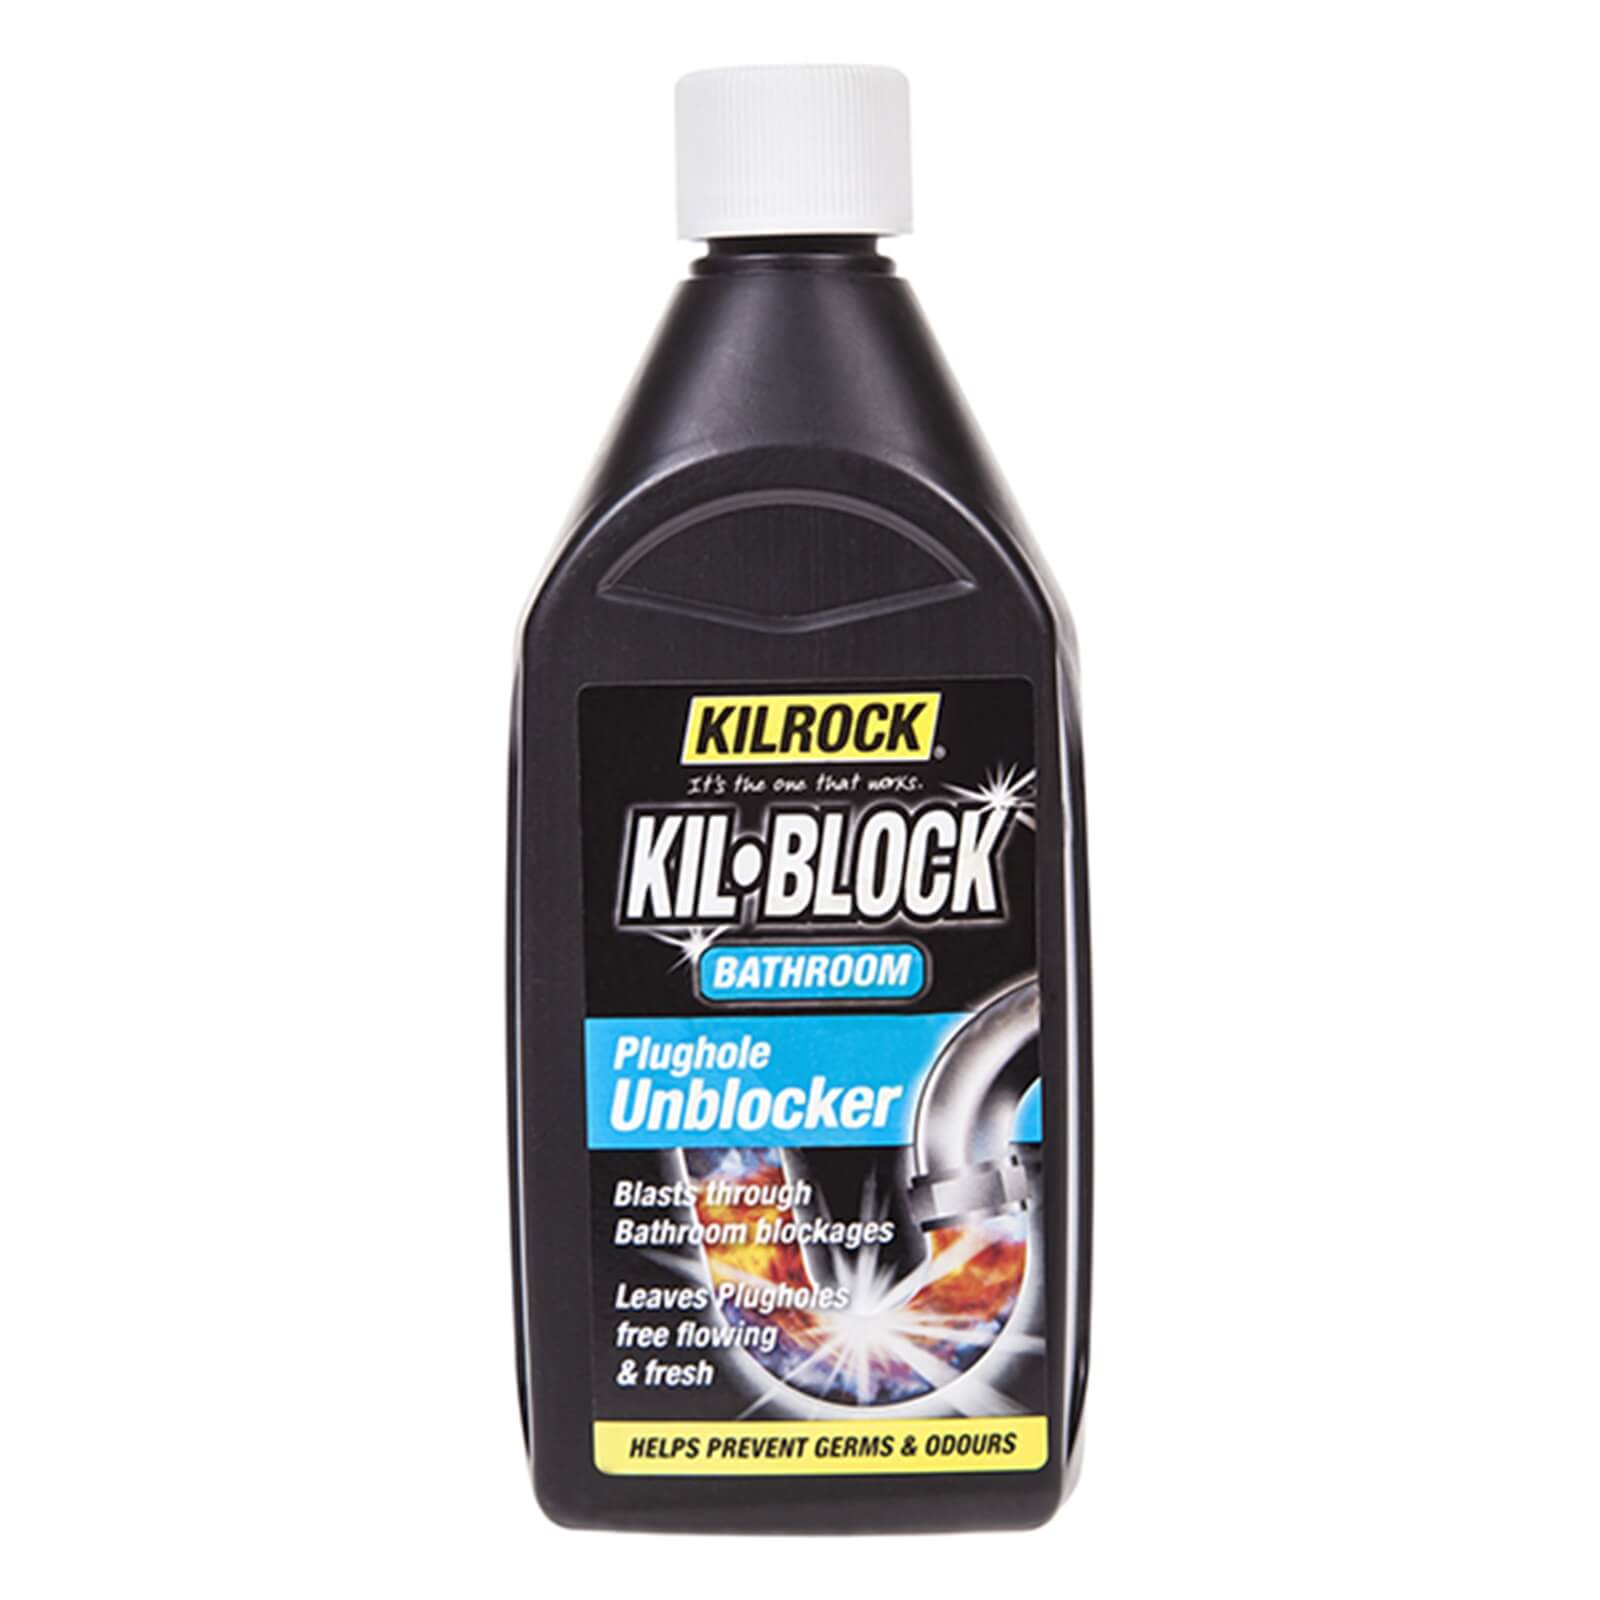 Kil-Block Bathroom Plughole Unblocker